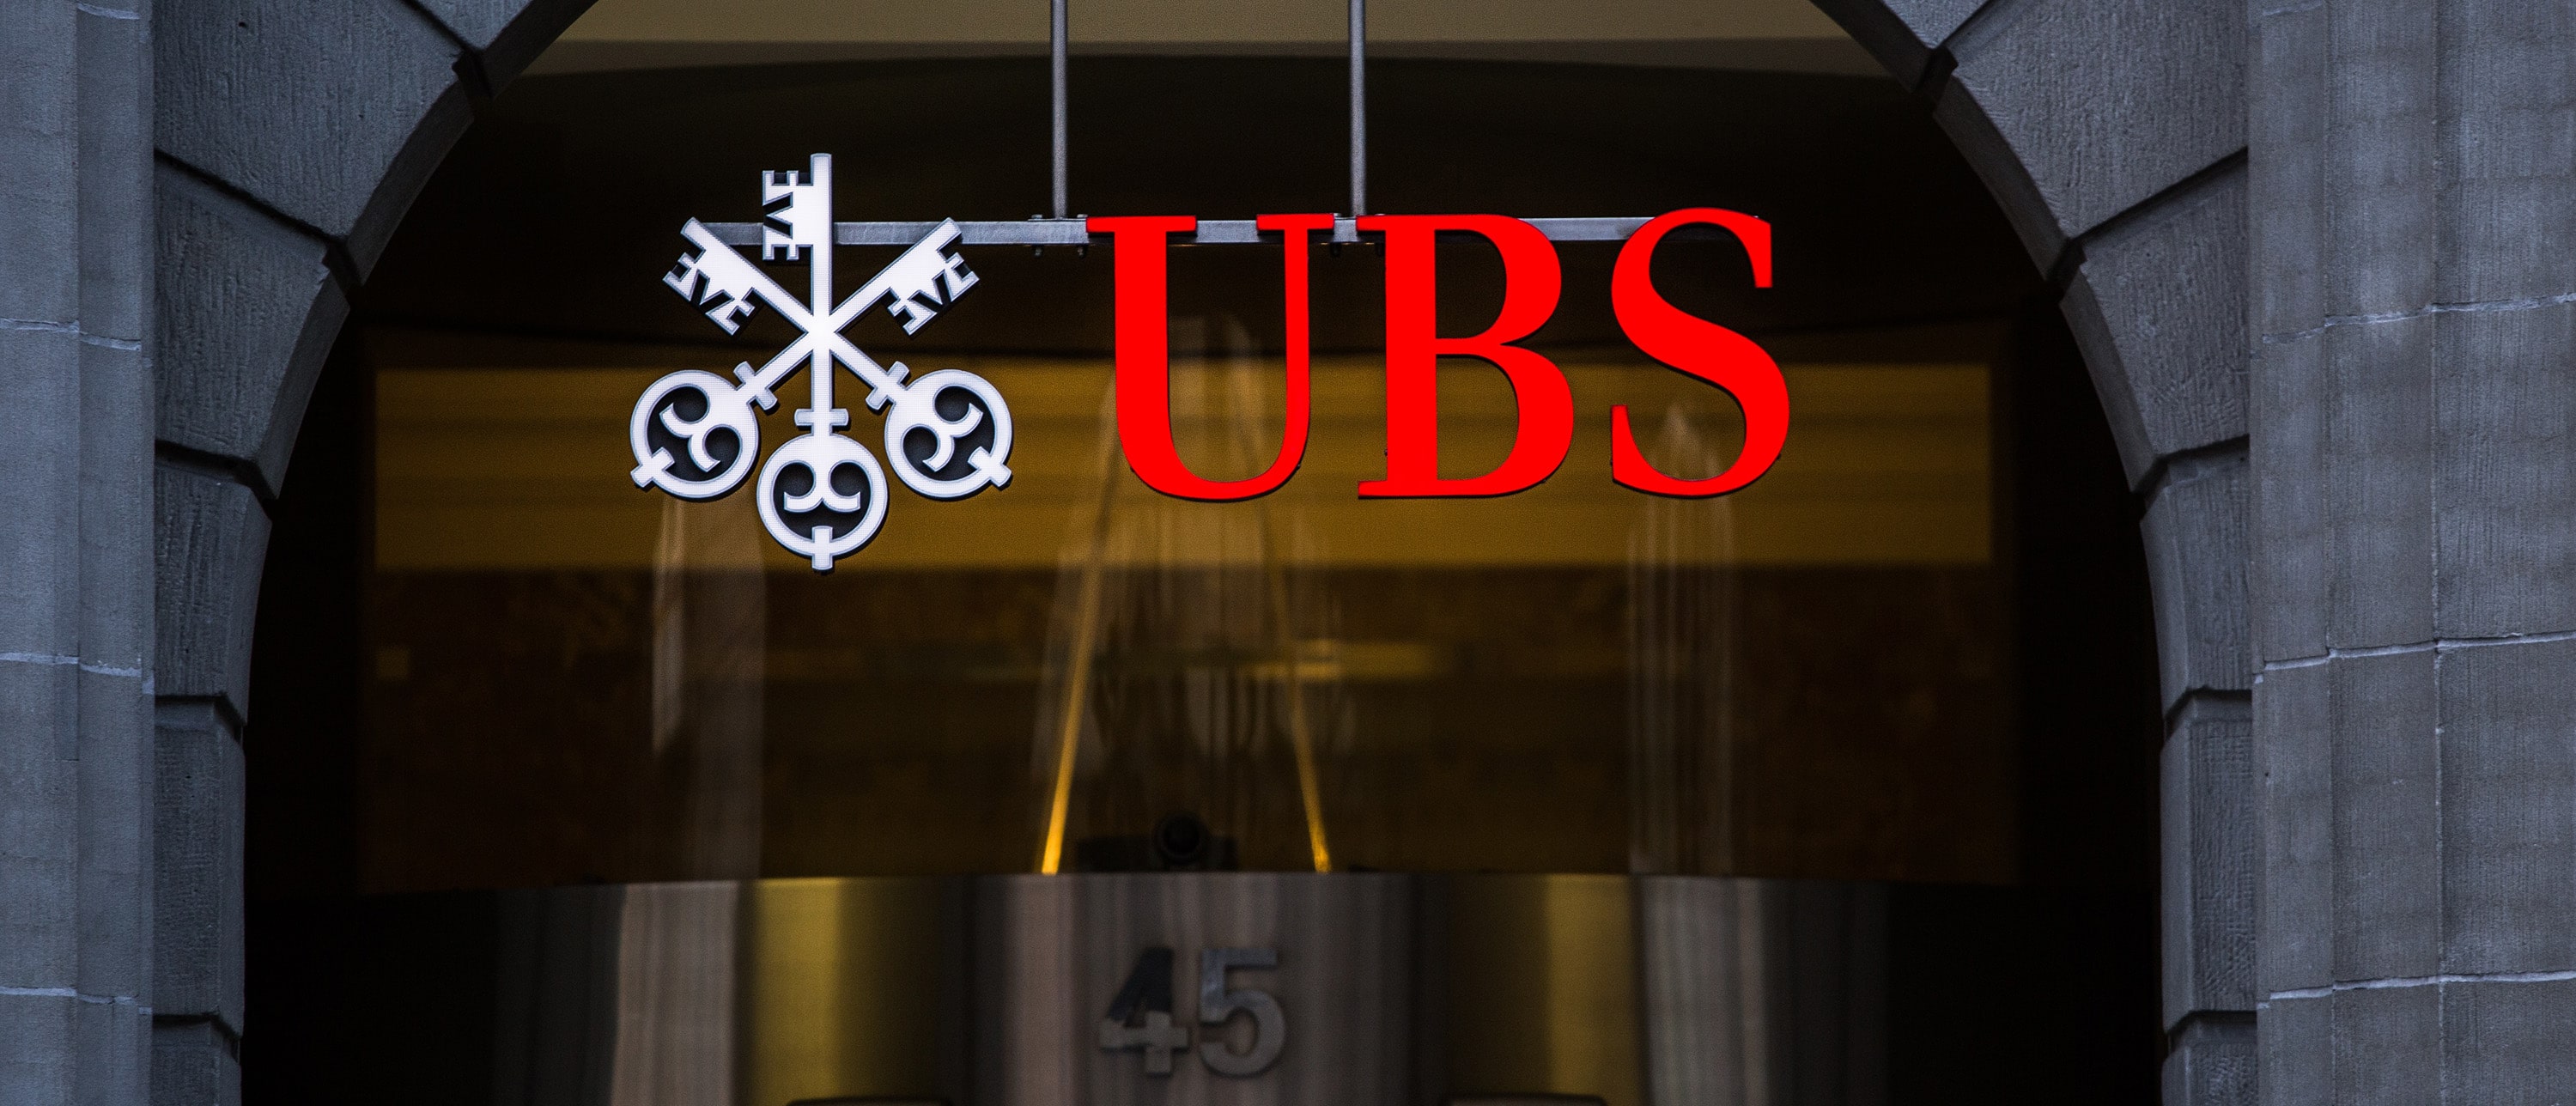 UBS Summer Internship Program